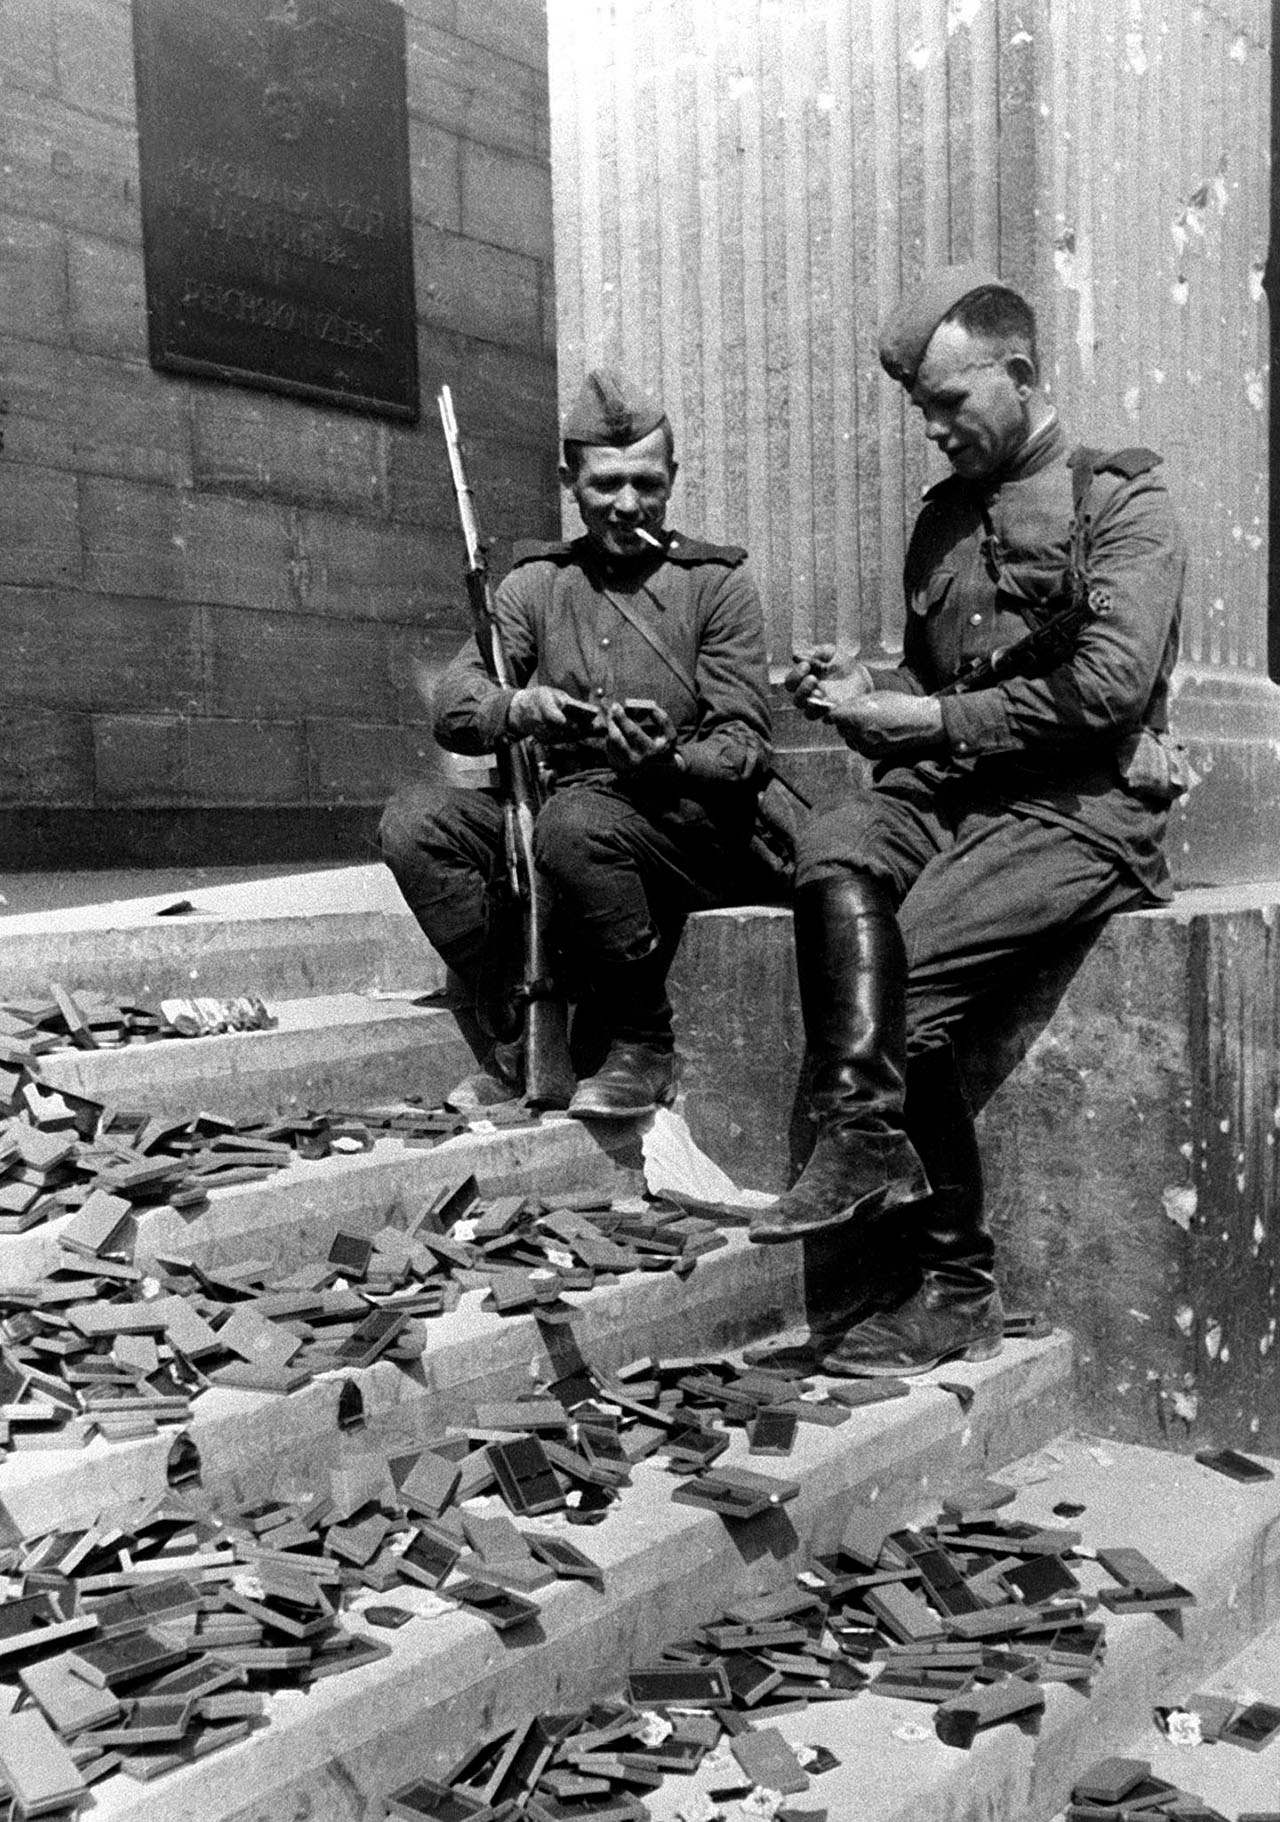 Бойцы Красной армии на ступенях здания Рейхсканцелярии после взятия города советскими войсками рассматривают брошенные награды гитлеровской армии